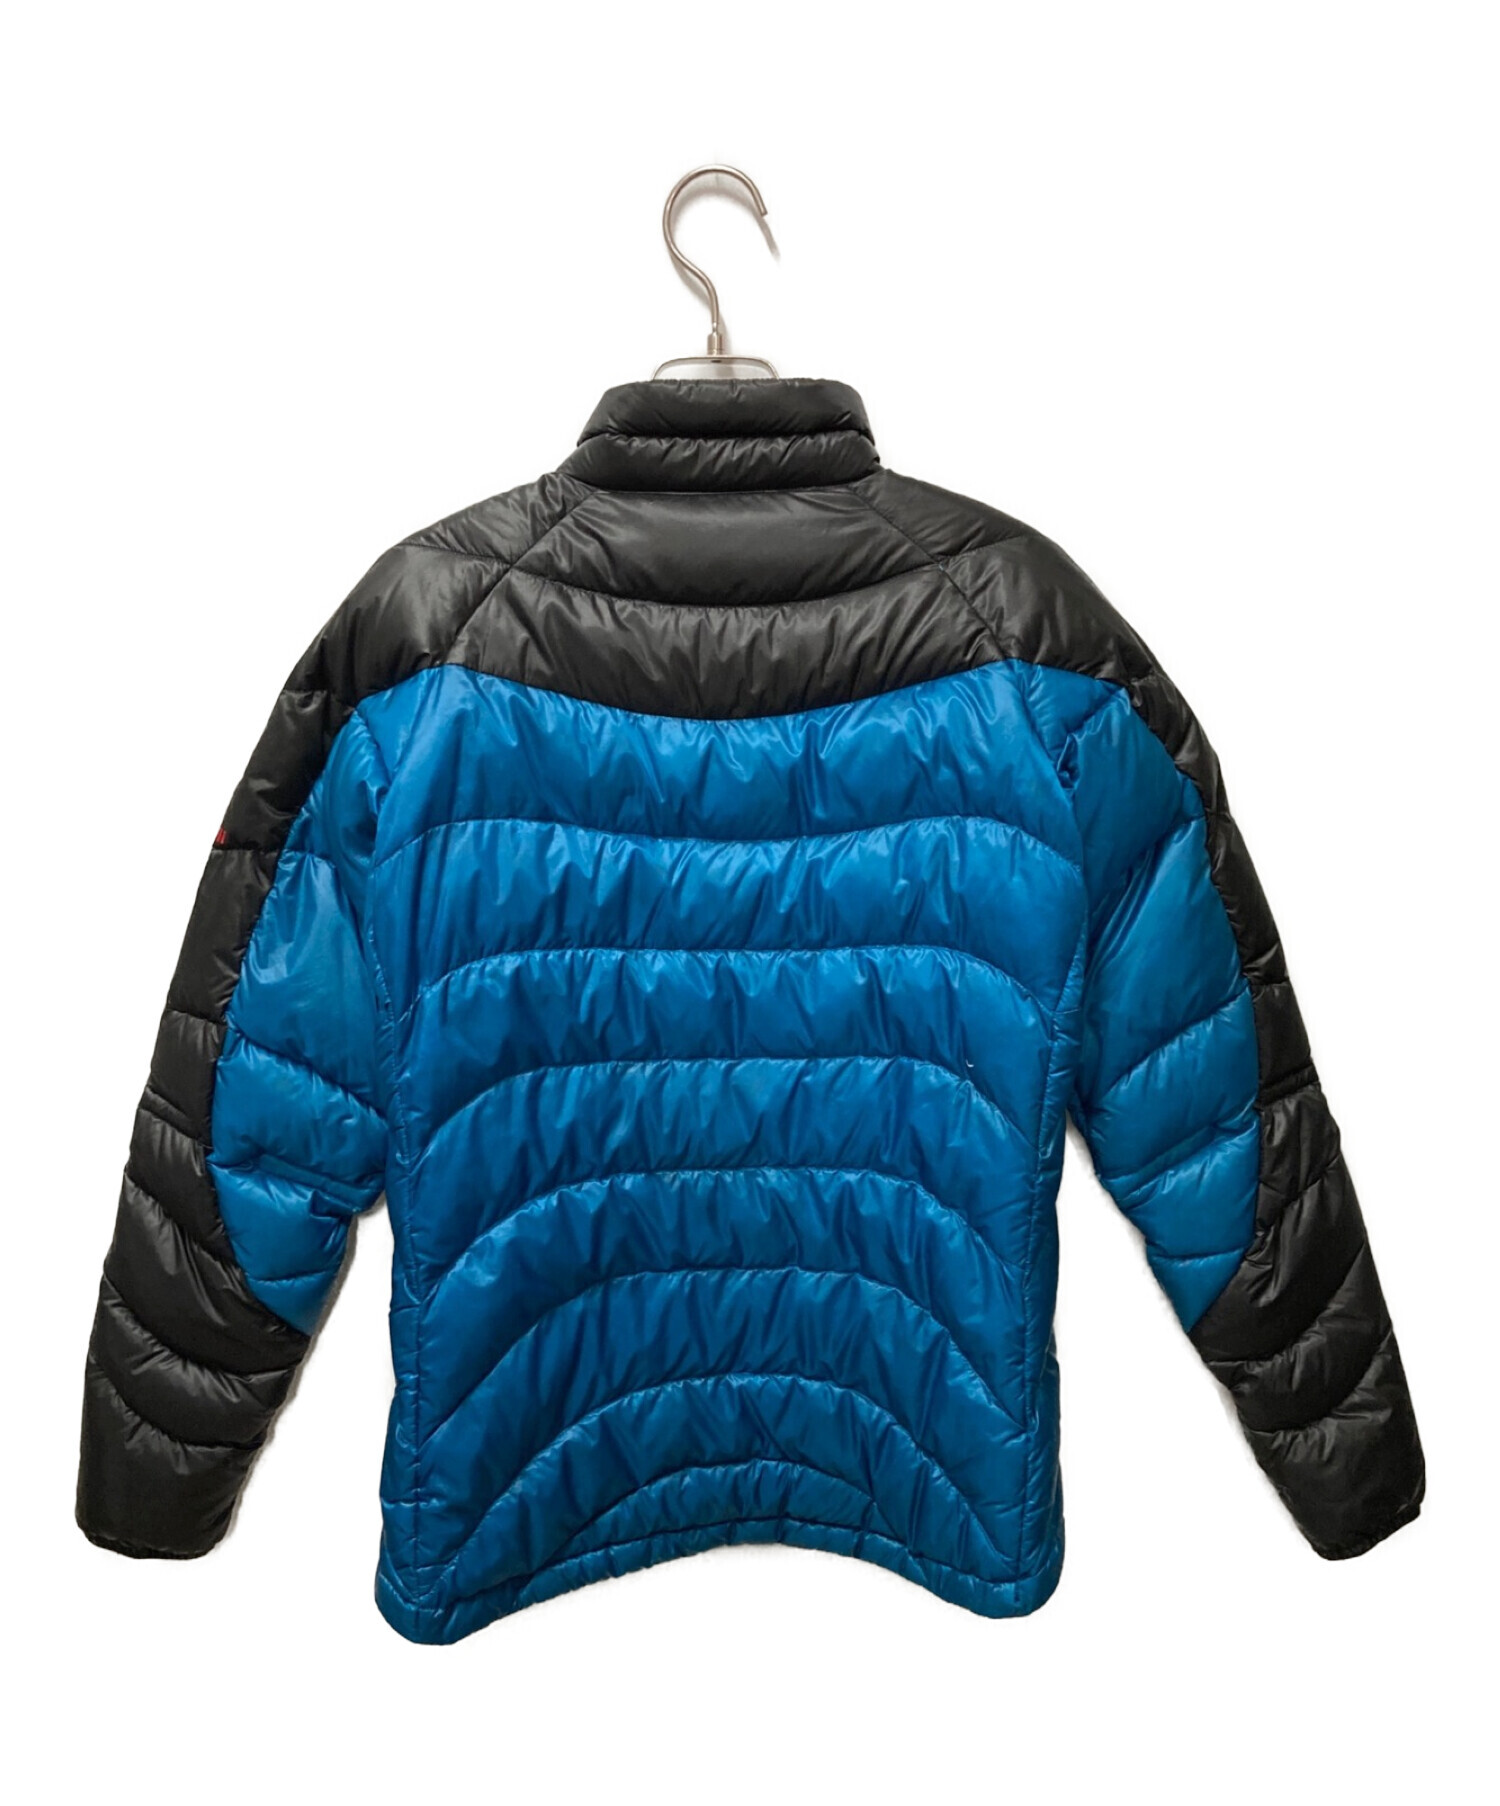 MARMOT (マーモット) 900プレミアムダウンジャケット ブルー サイズ:Ｓ